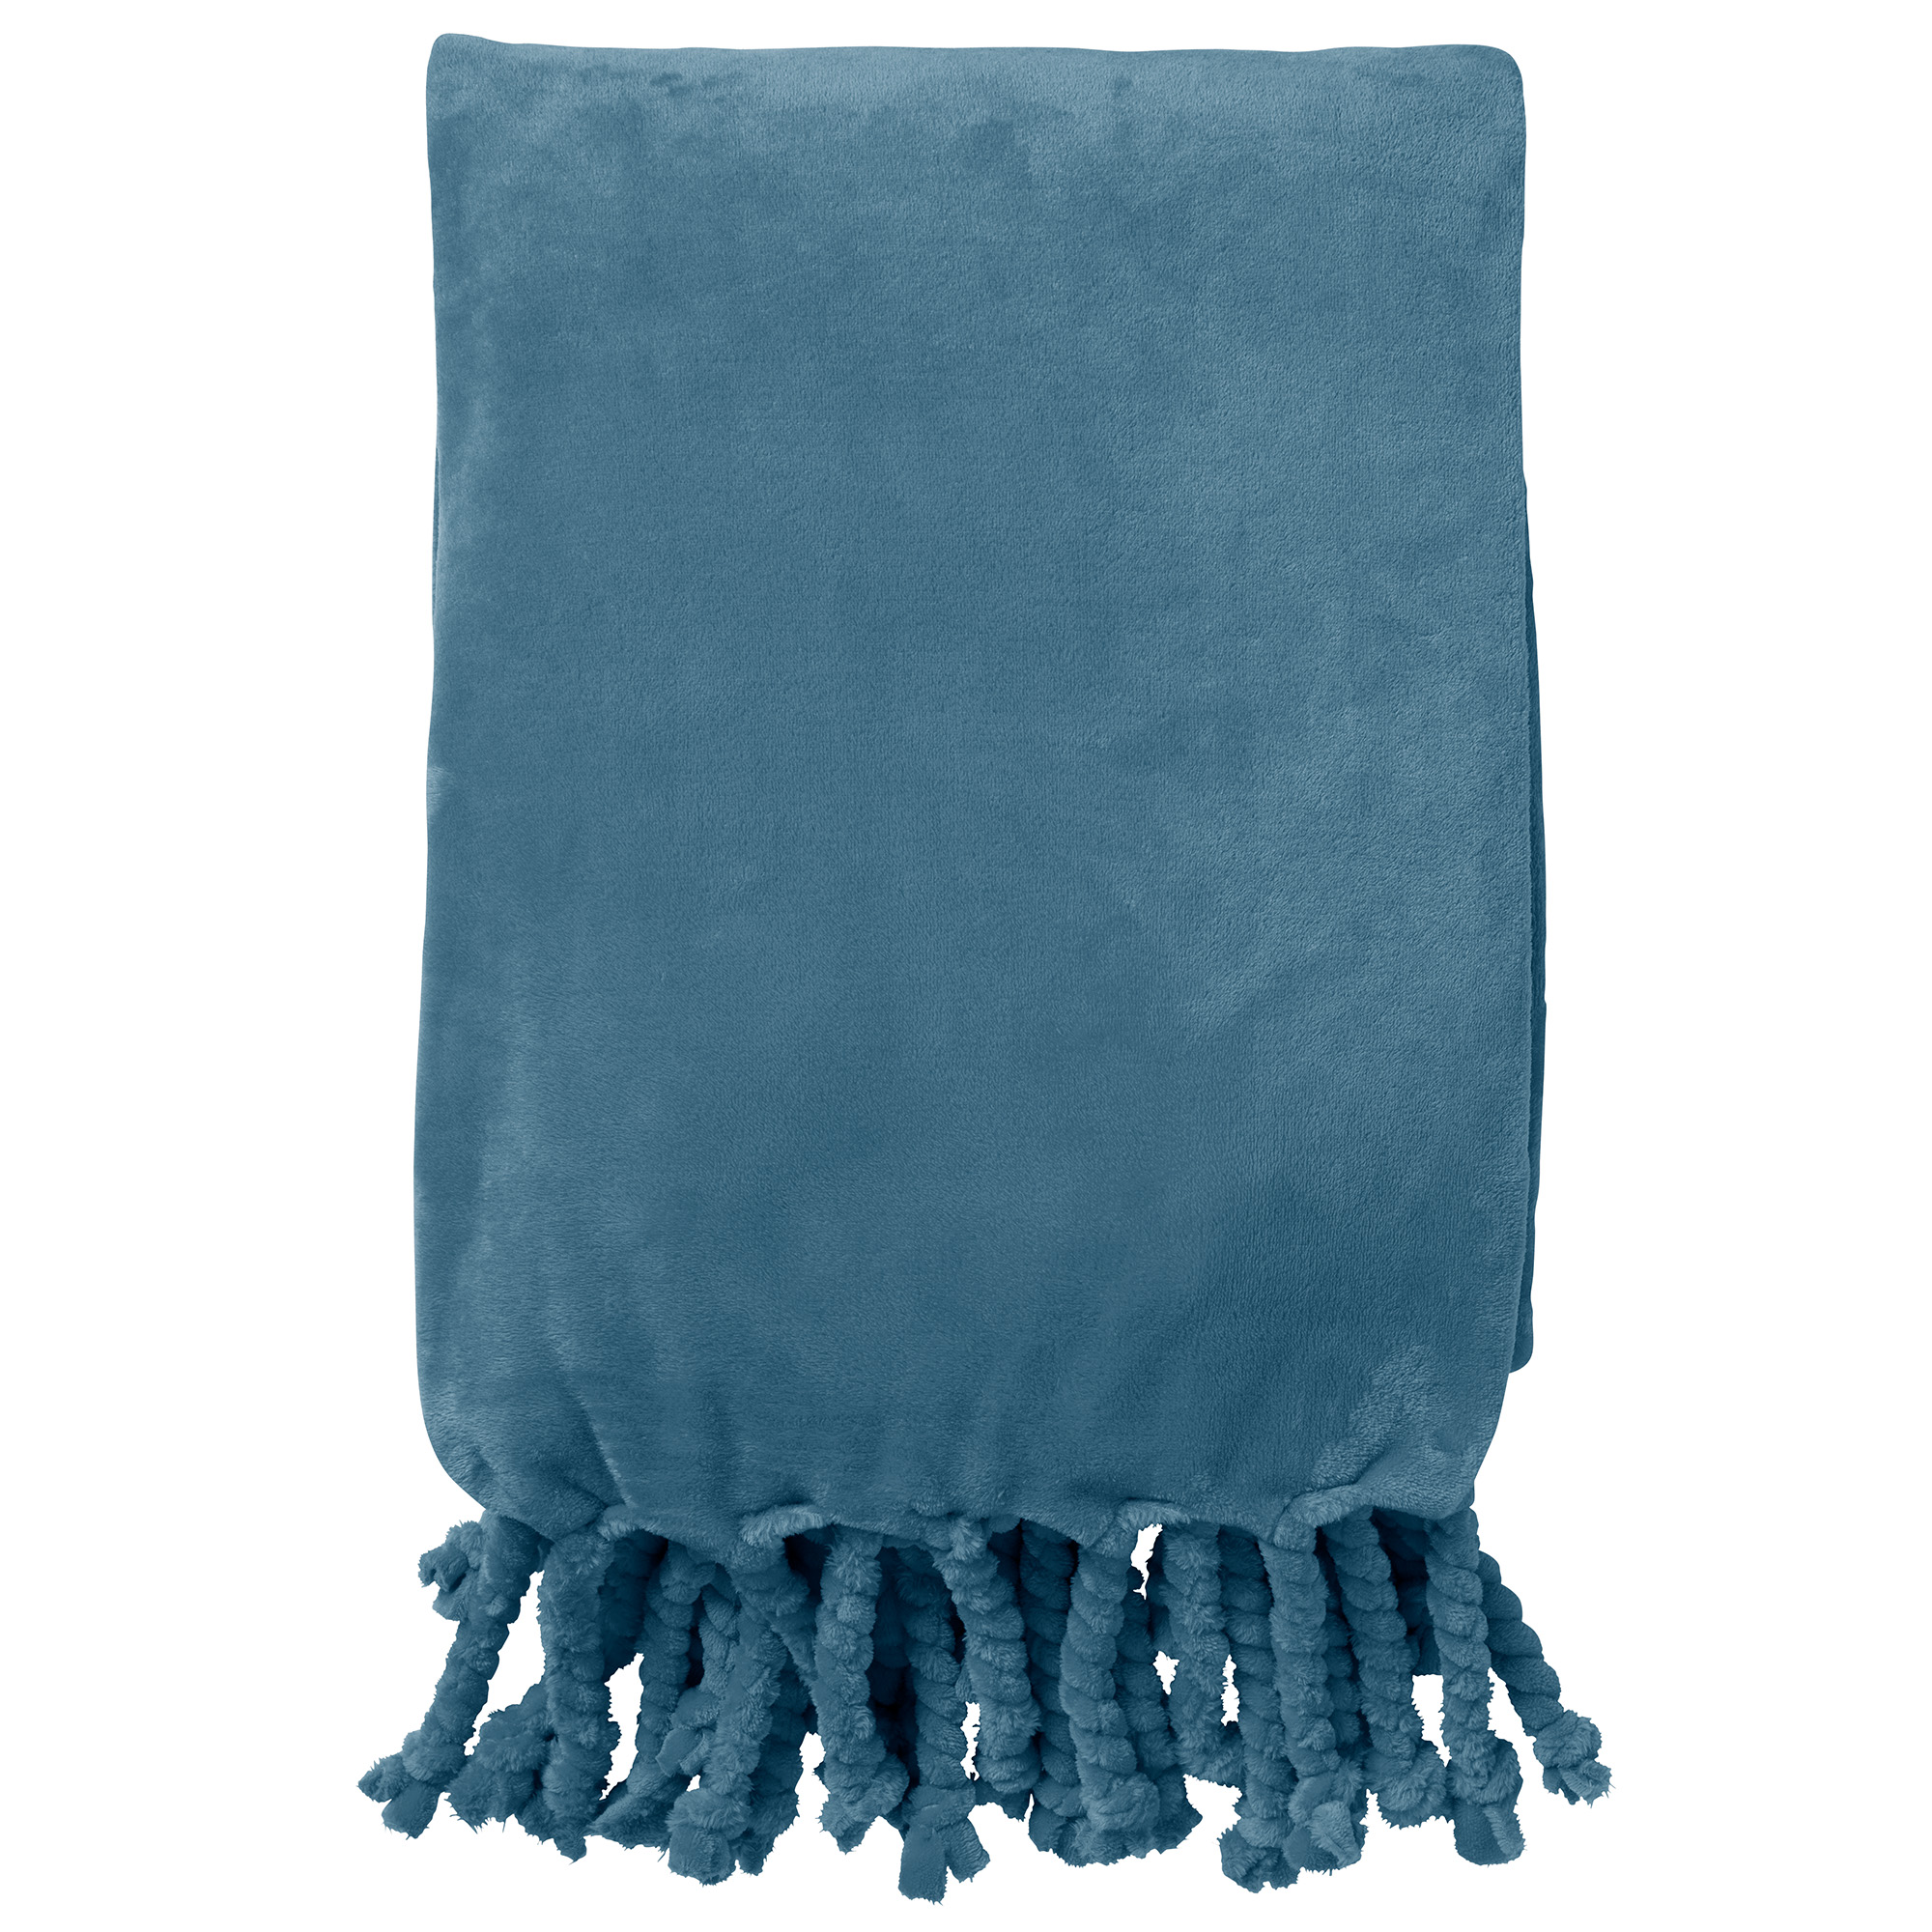 FLORIJN - Plaid van fleece 150x200 cm Provincial Blue - blauw - superzacht - met franjes